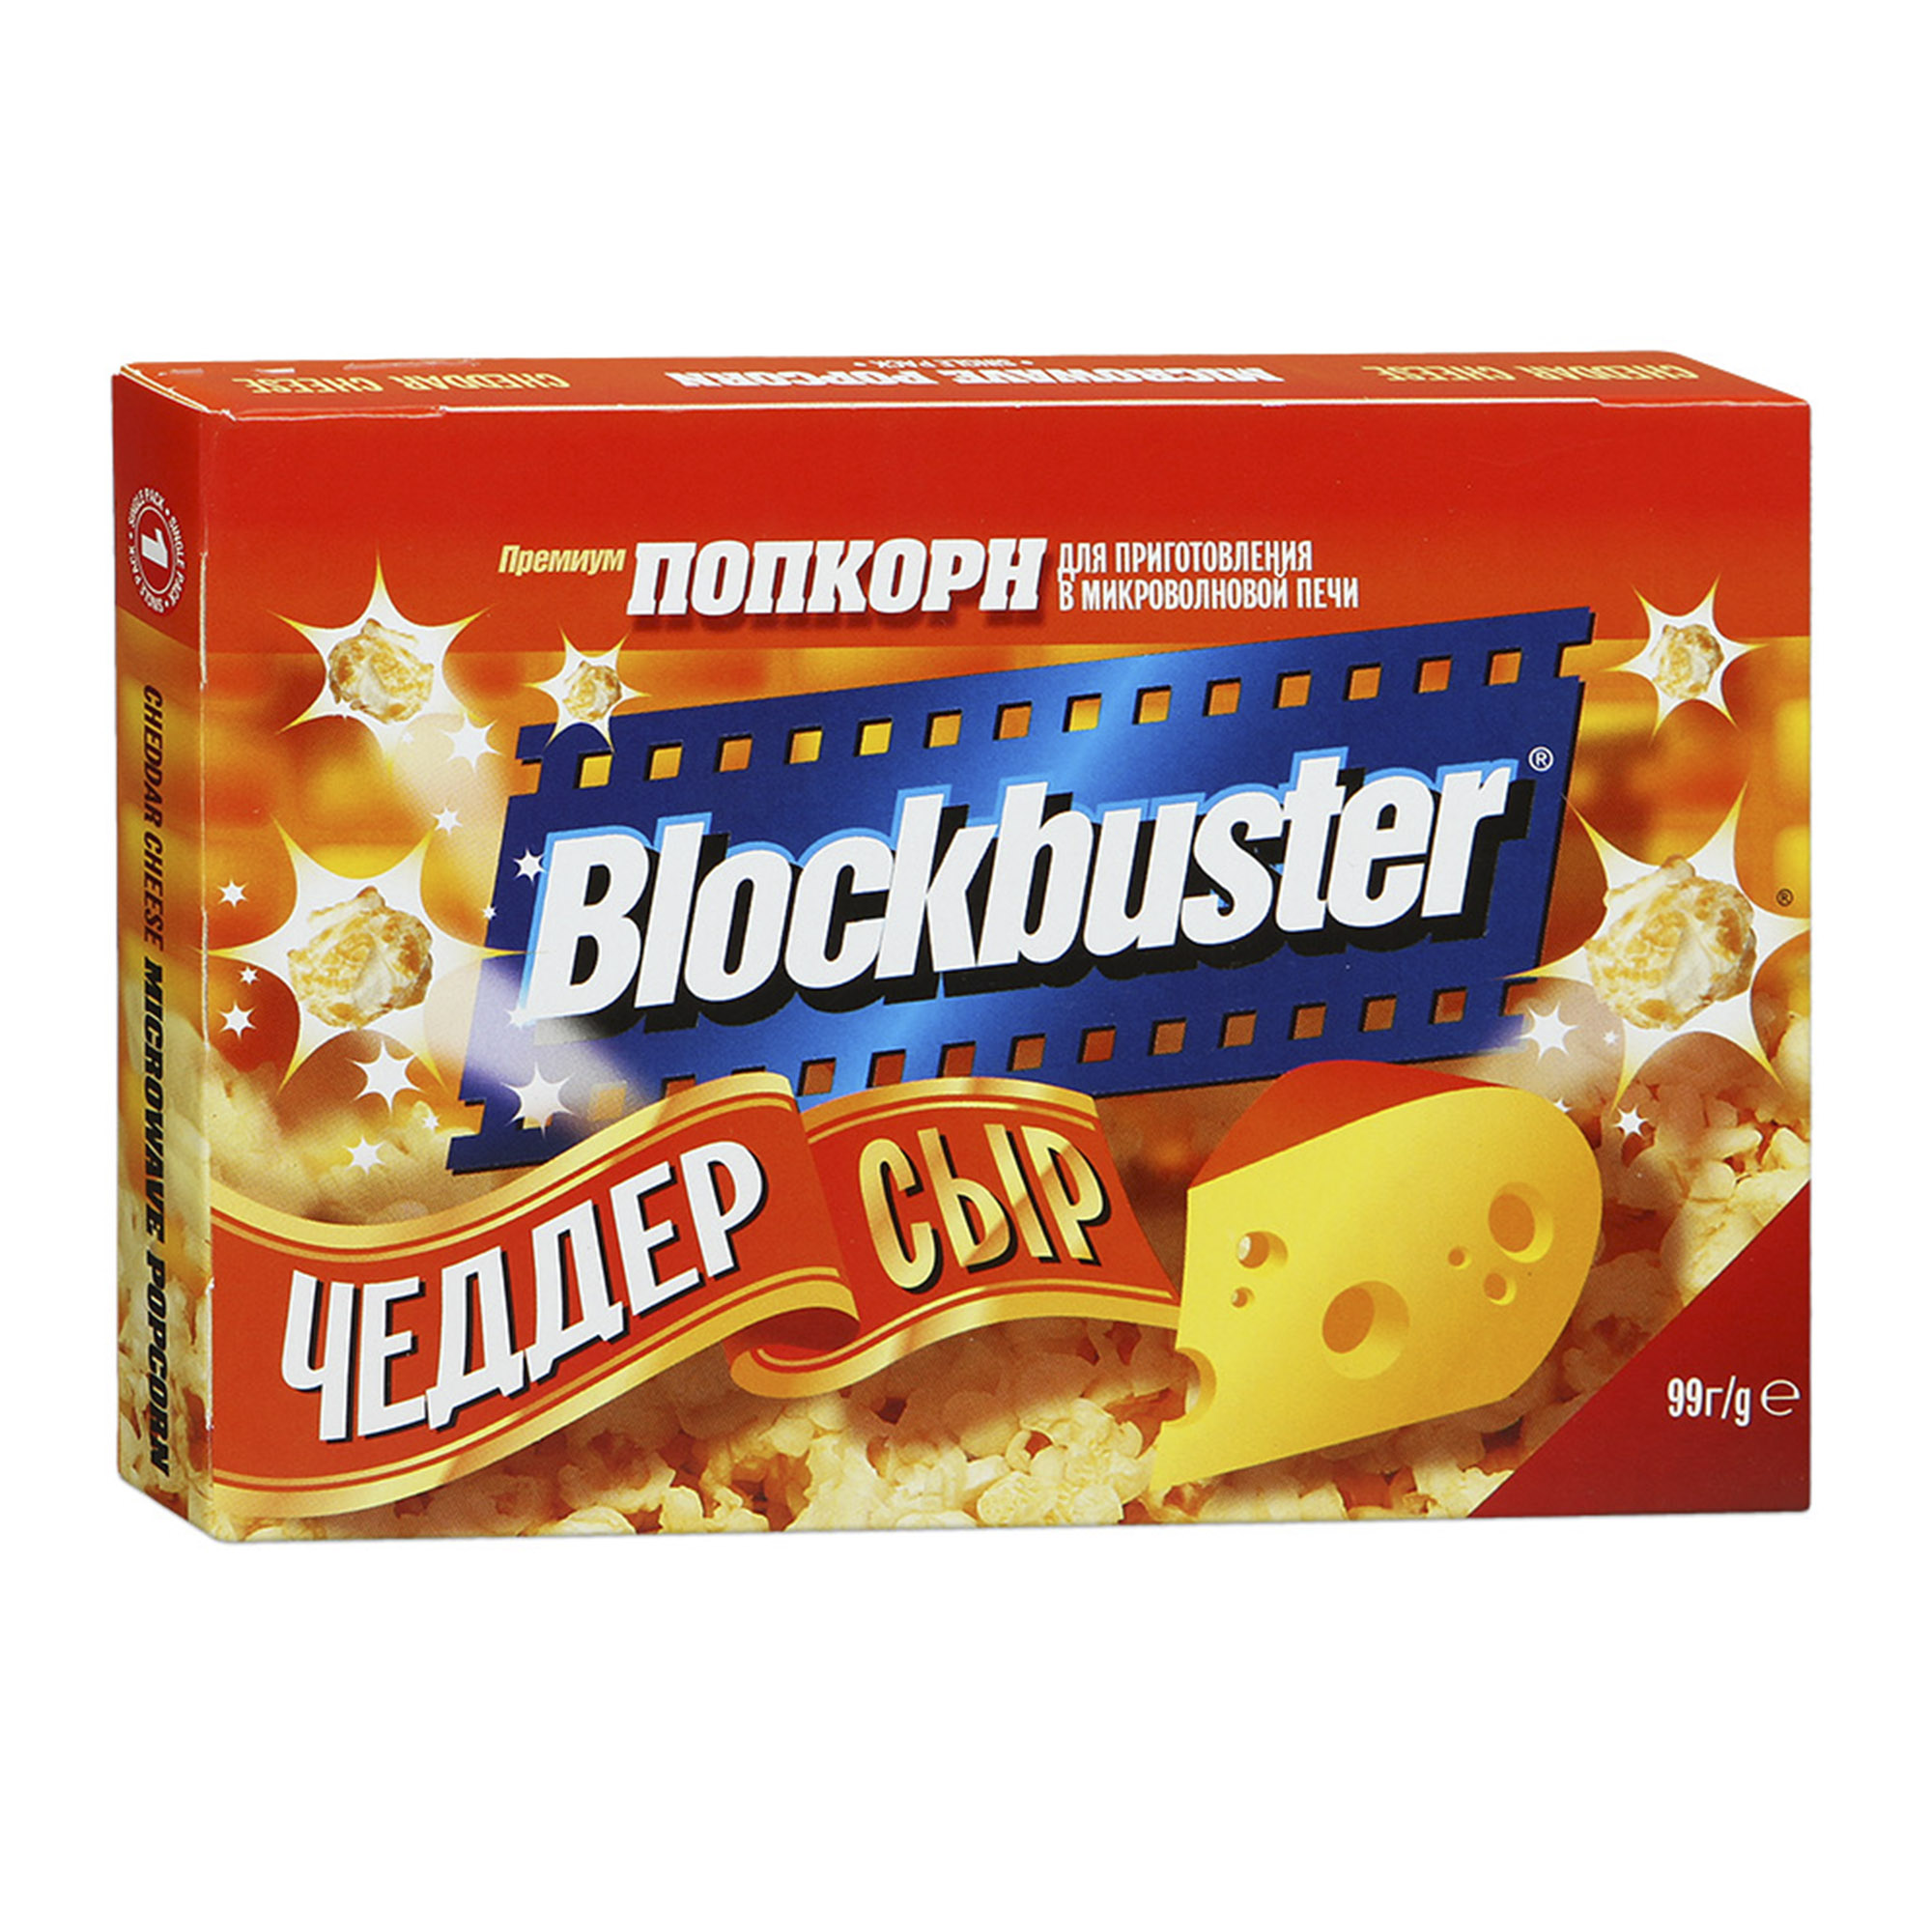 Попкорн Blockbuster с сыром Чеддер 90 г улитка греческая с сыром 90 г